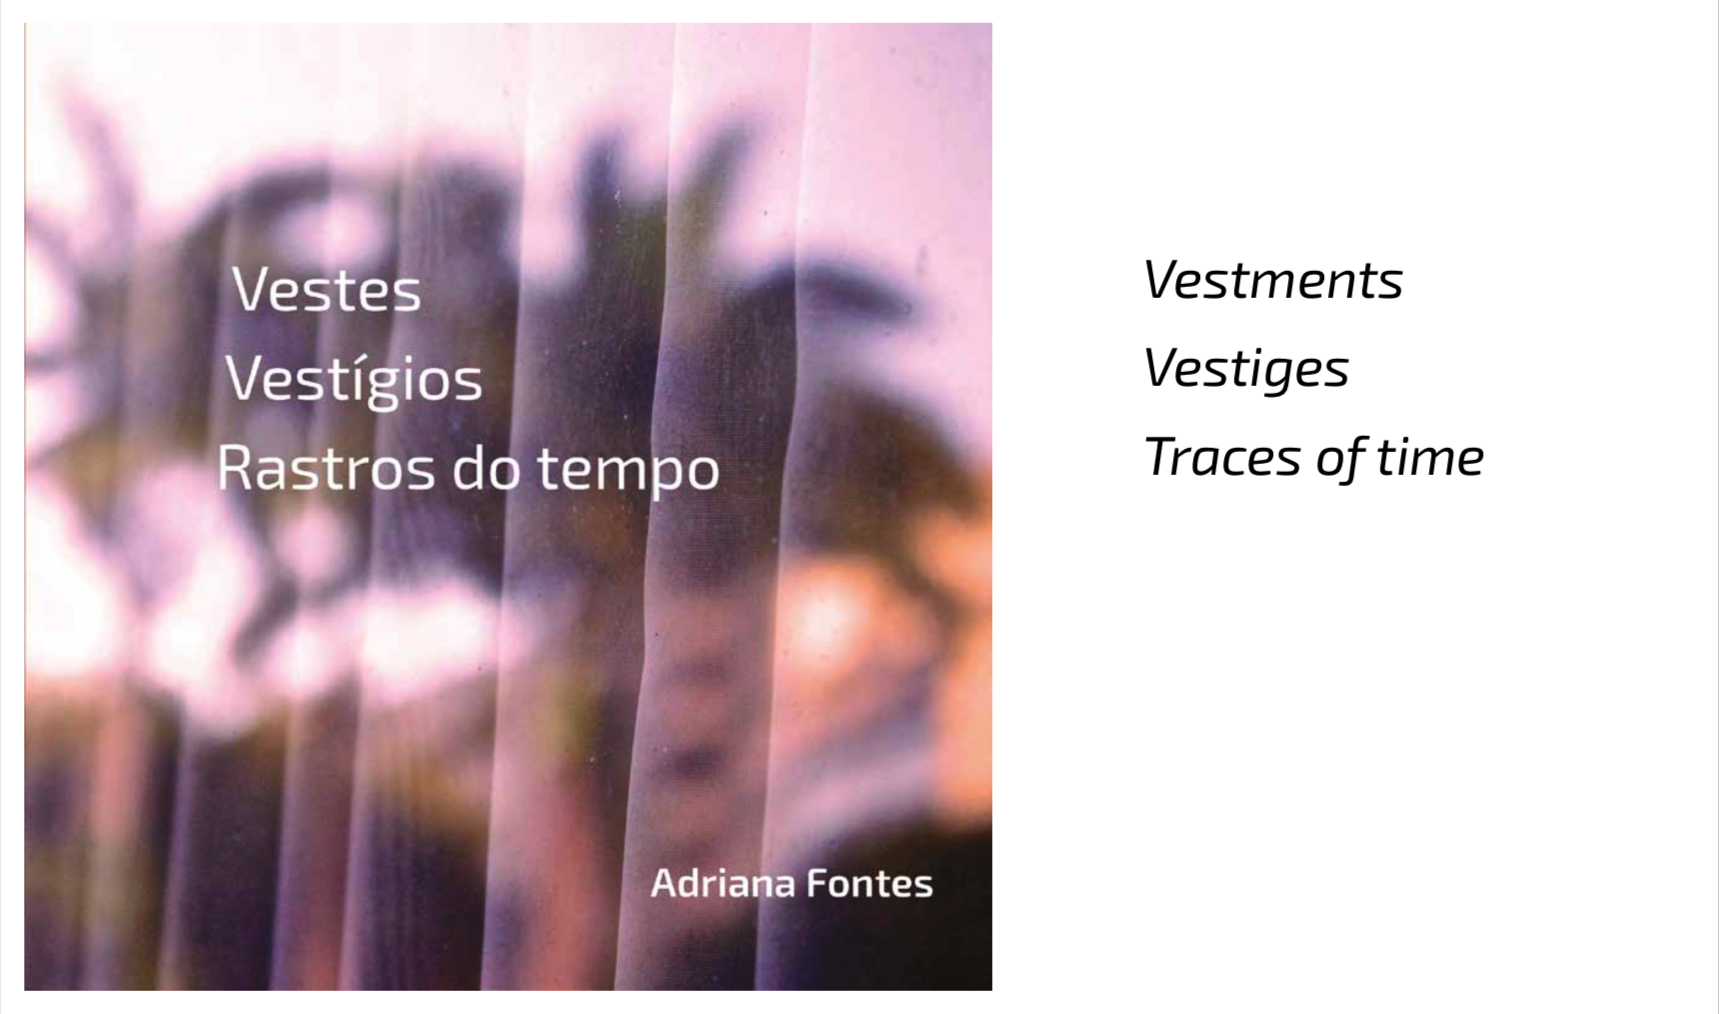 Vestes Vestígios Retratos do Tempo - An Art Installation